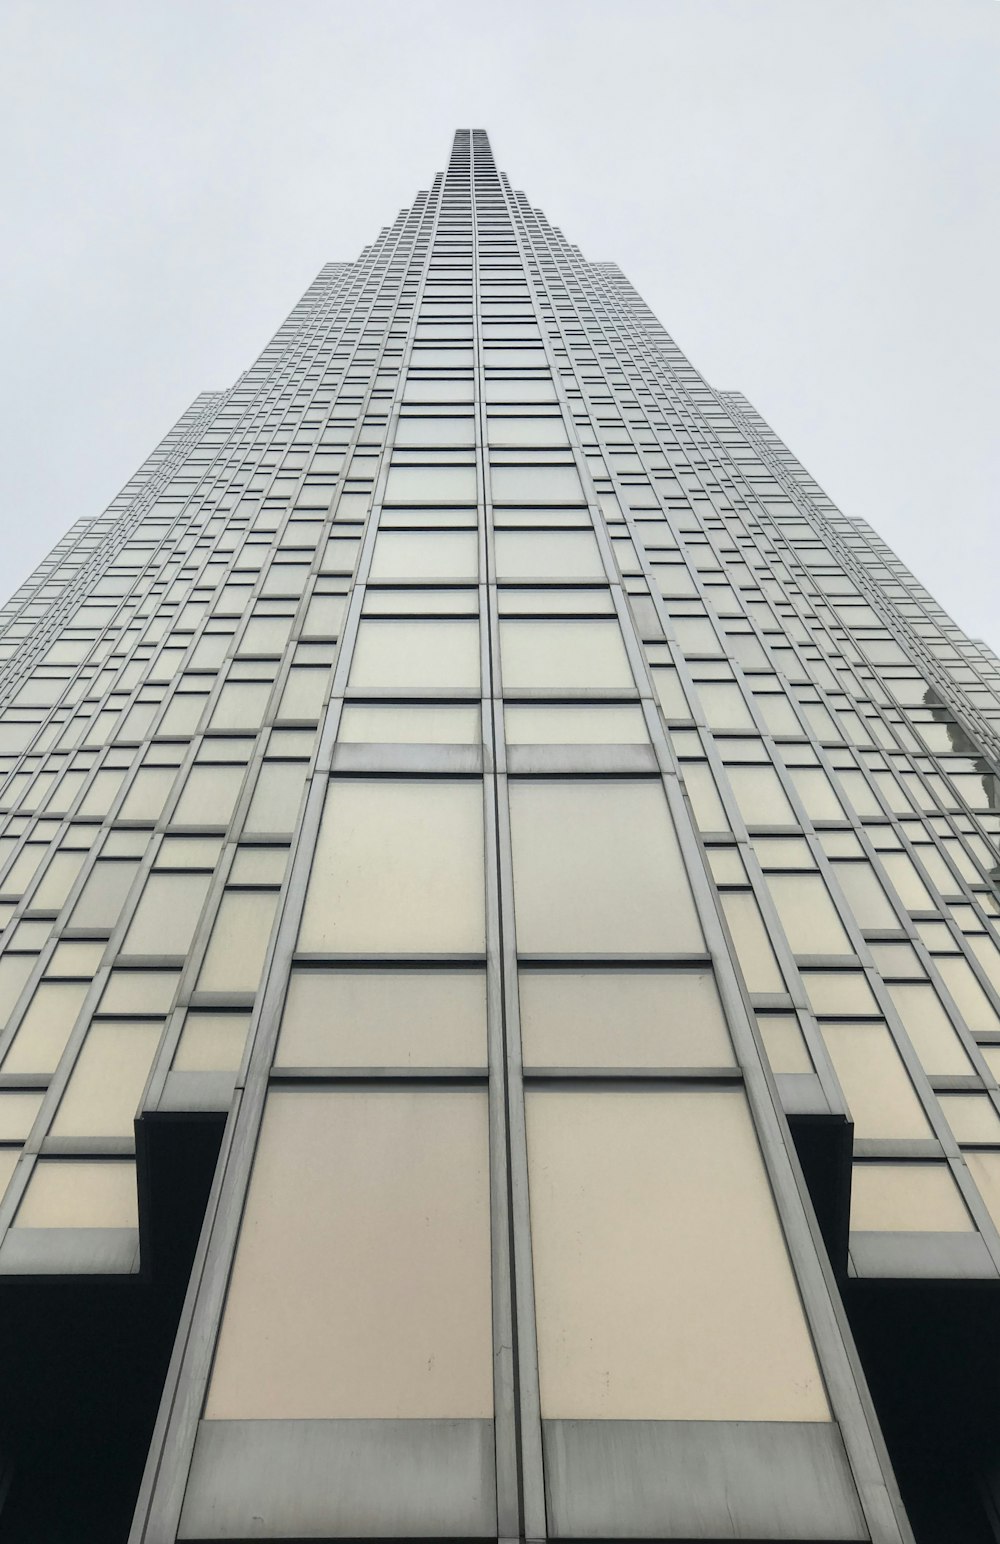 Fotografía de ángulo bajo de un edificio de vidrio gris